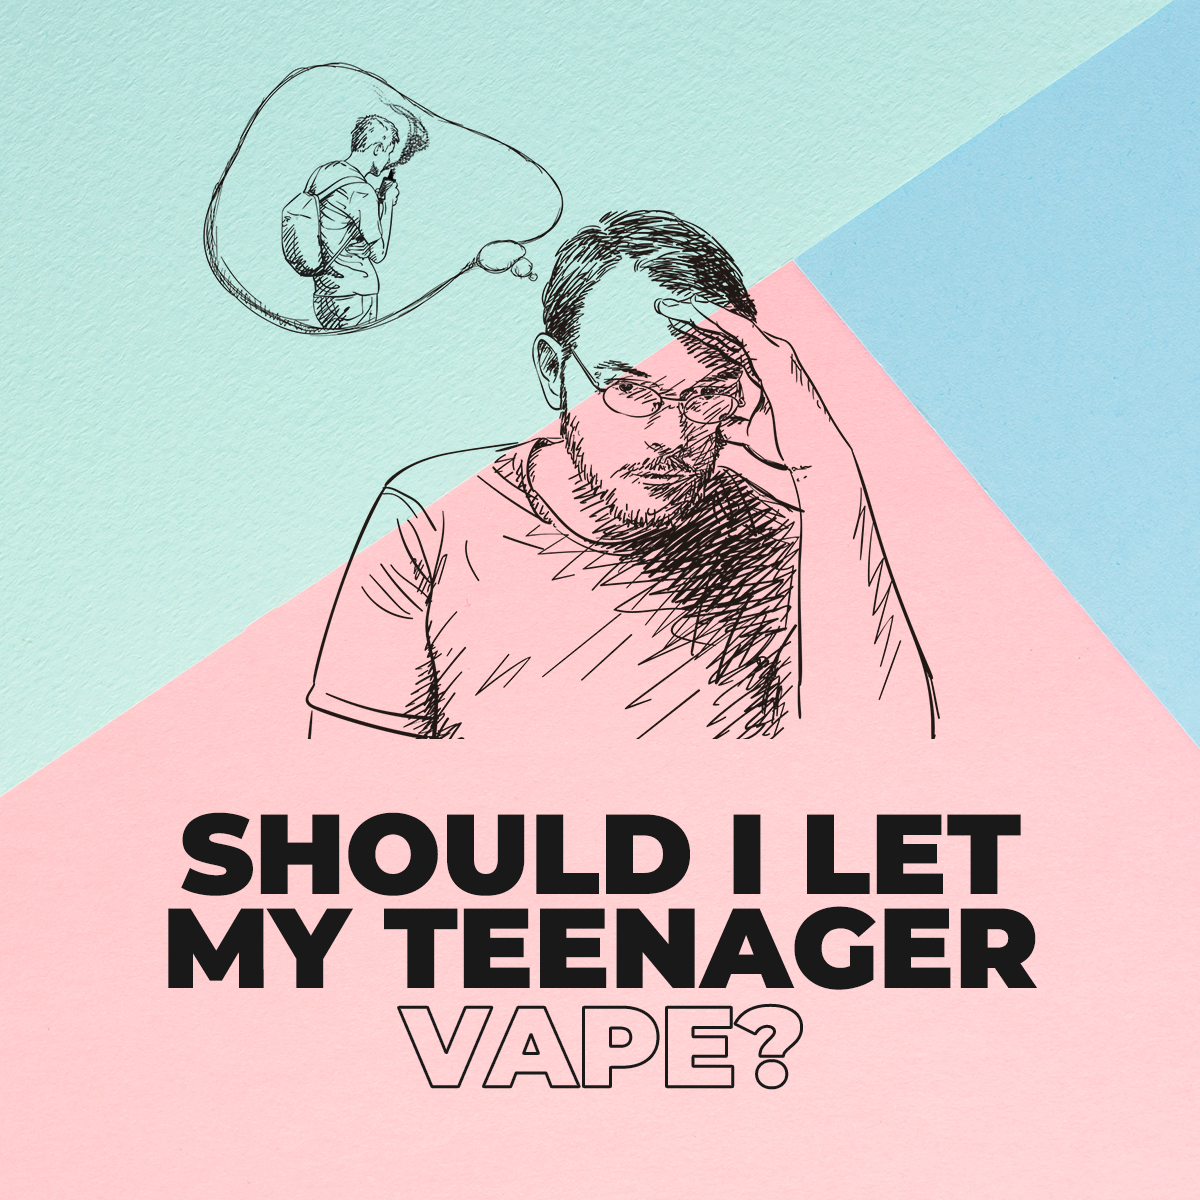 Parents: Should I Let My Teenager Vape?